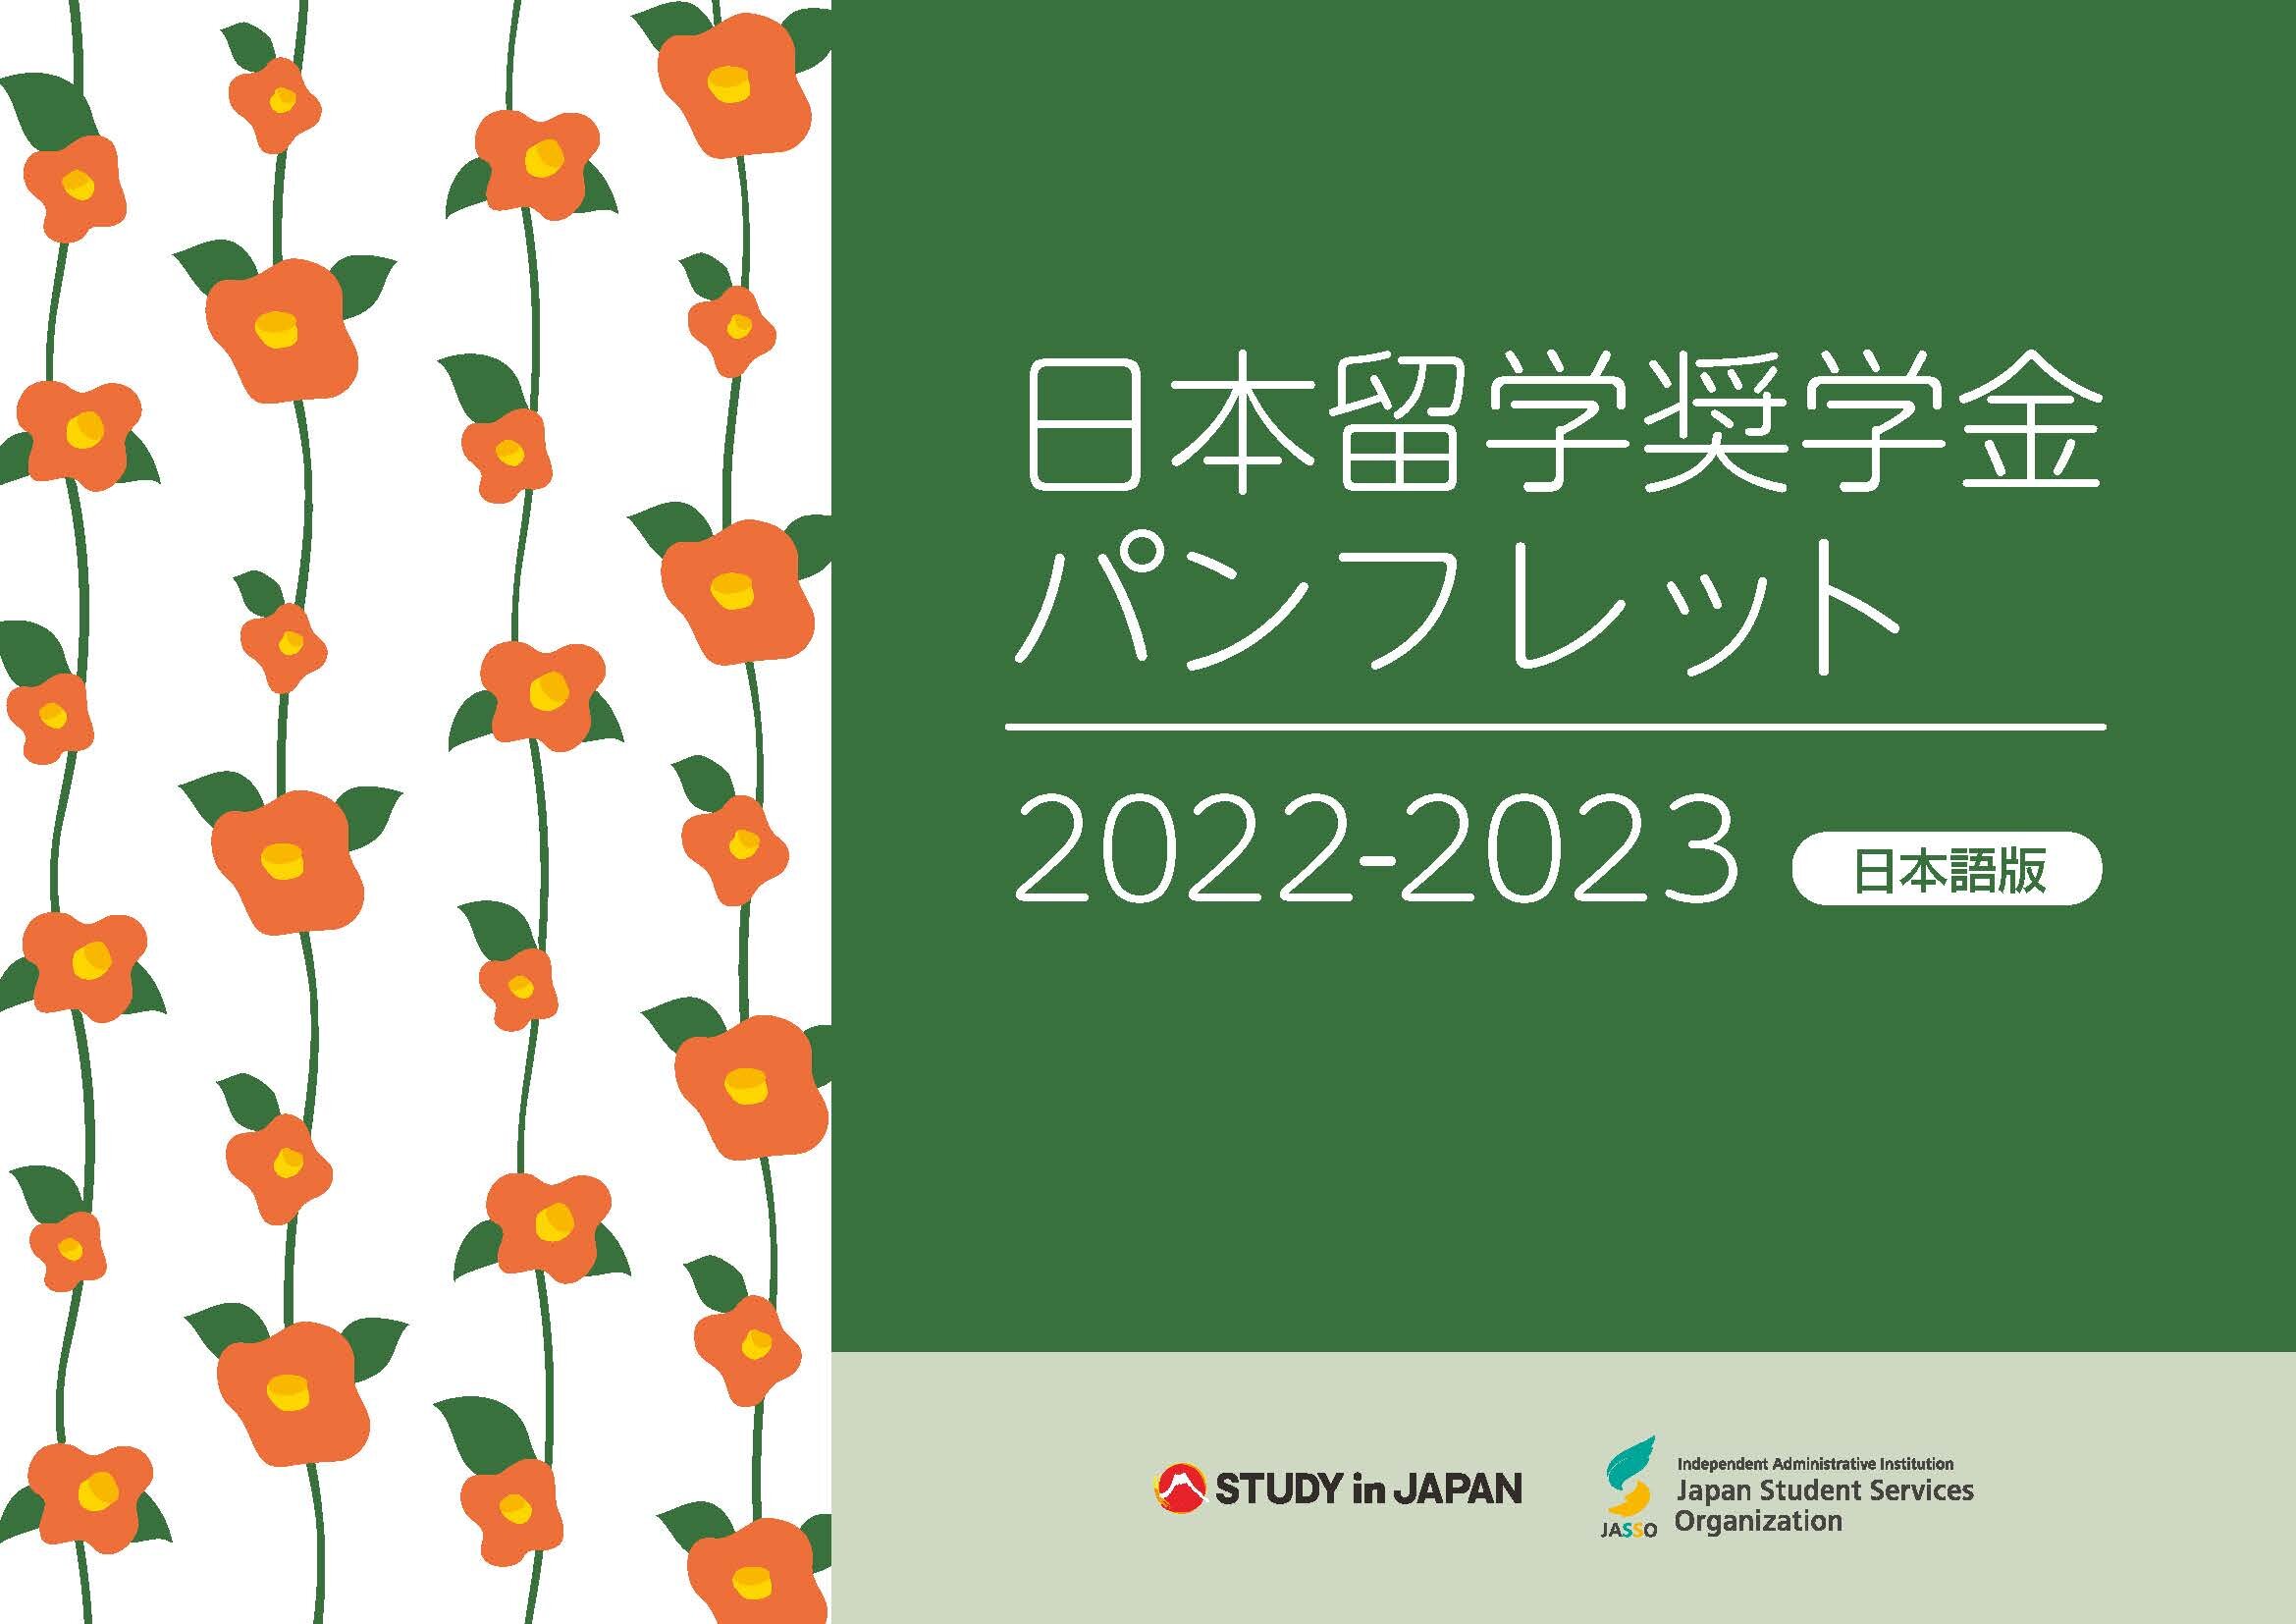 2022-2023【和】パンフレット_表紙.jpg